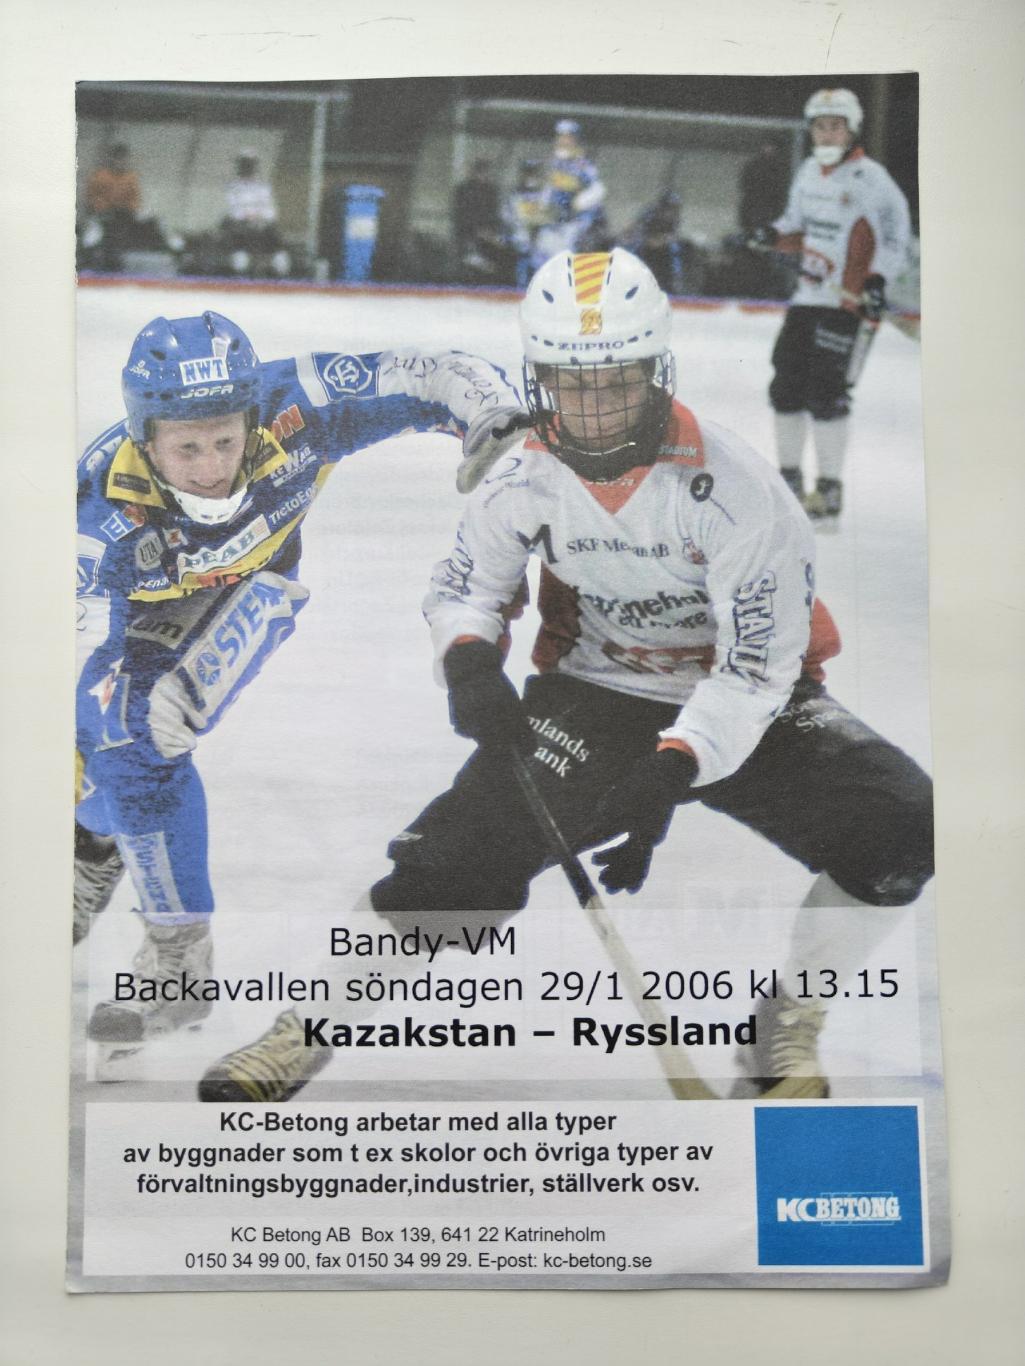 Хоккей с мячом. Швеция. Казахстан - Россия 28 января 2006 Чемпионат Мира